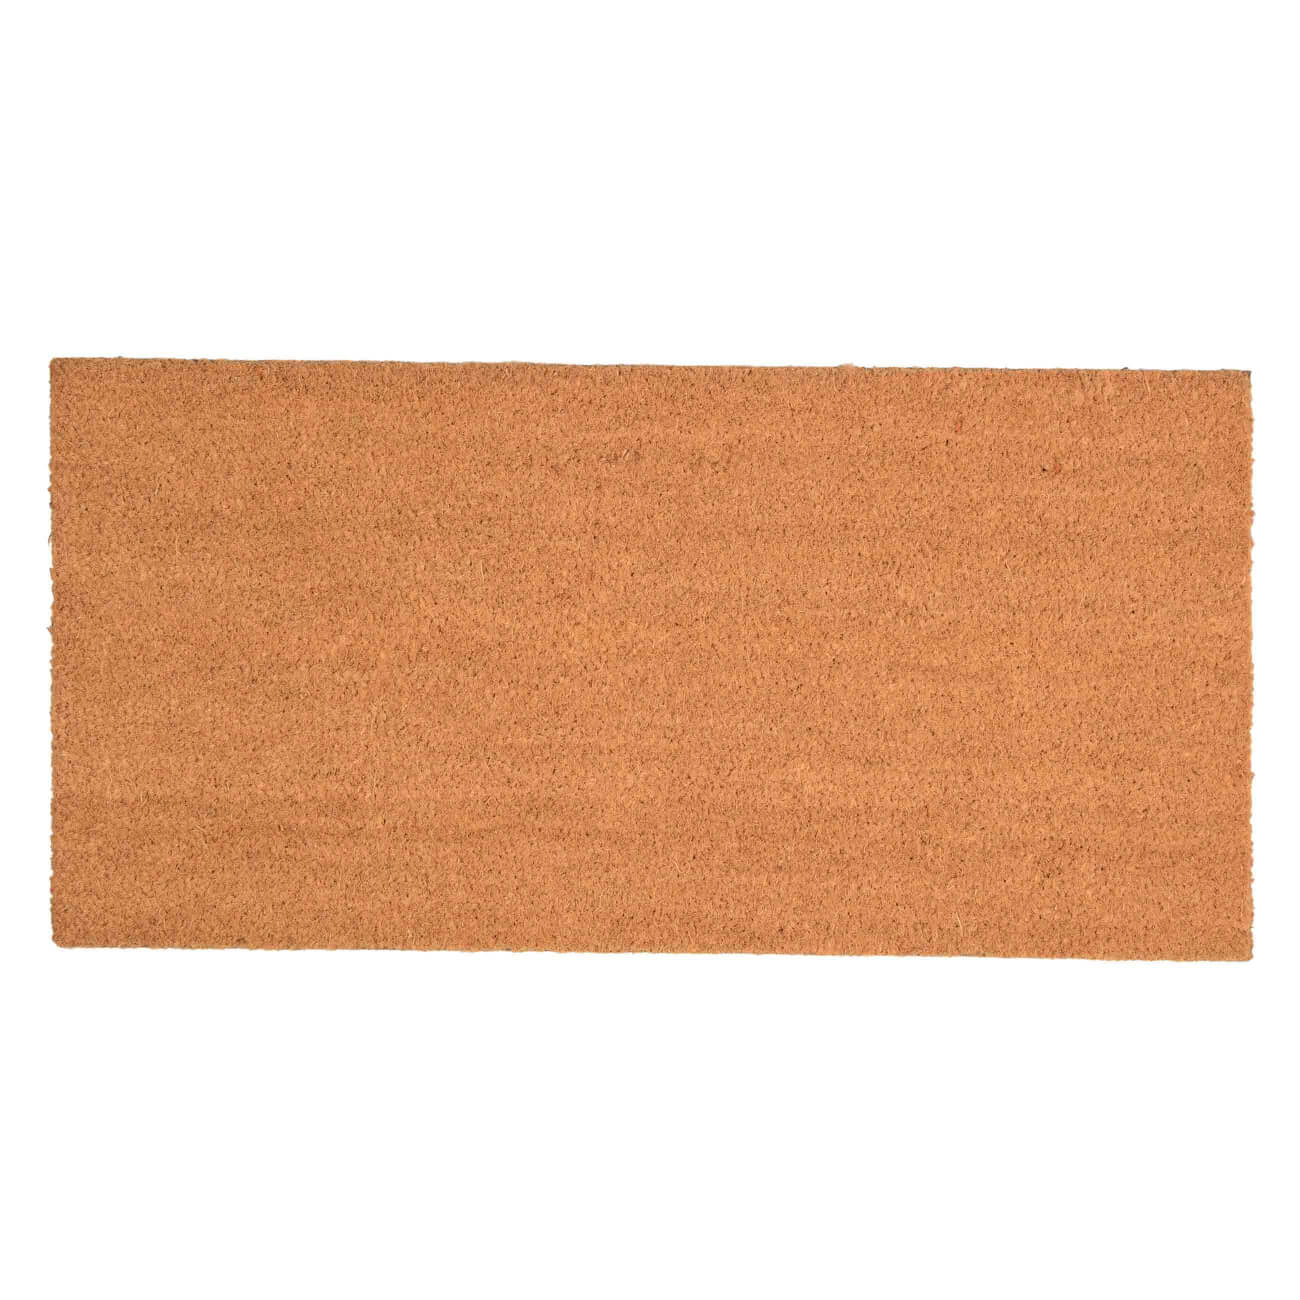 Коврик придверный, 40х80 см, кокос/ПВХ, коричневый, Basic коврик inspire porto 1051 45x75 см резина коричневый